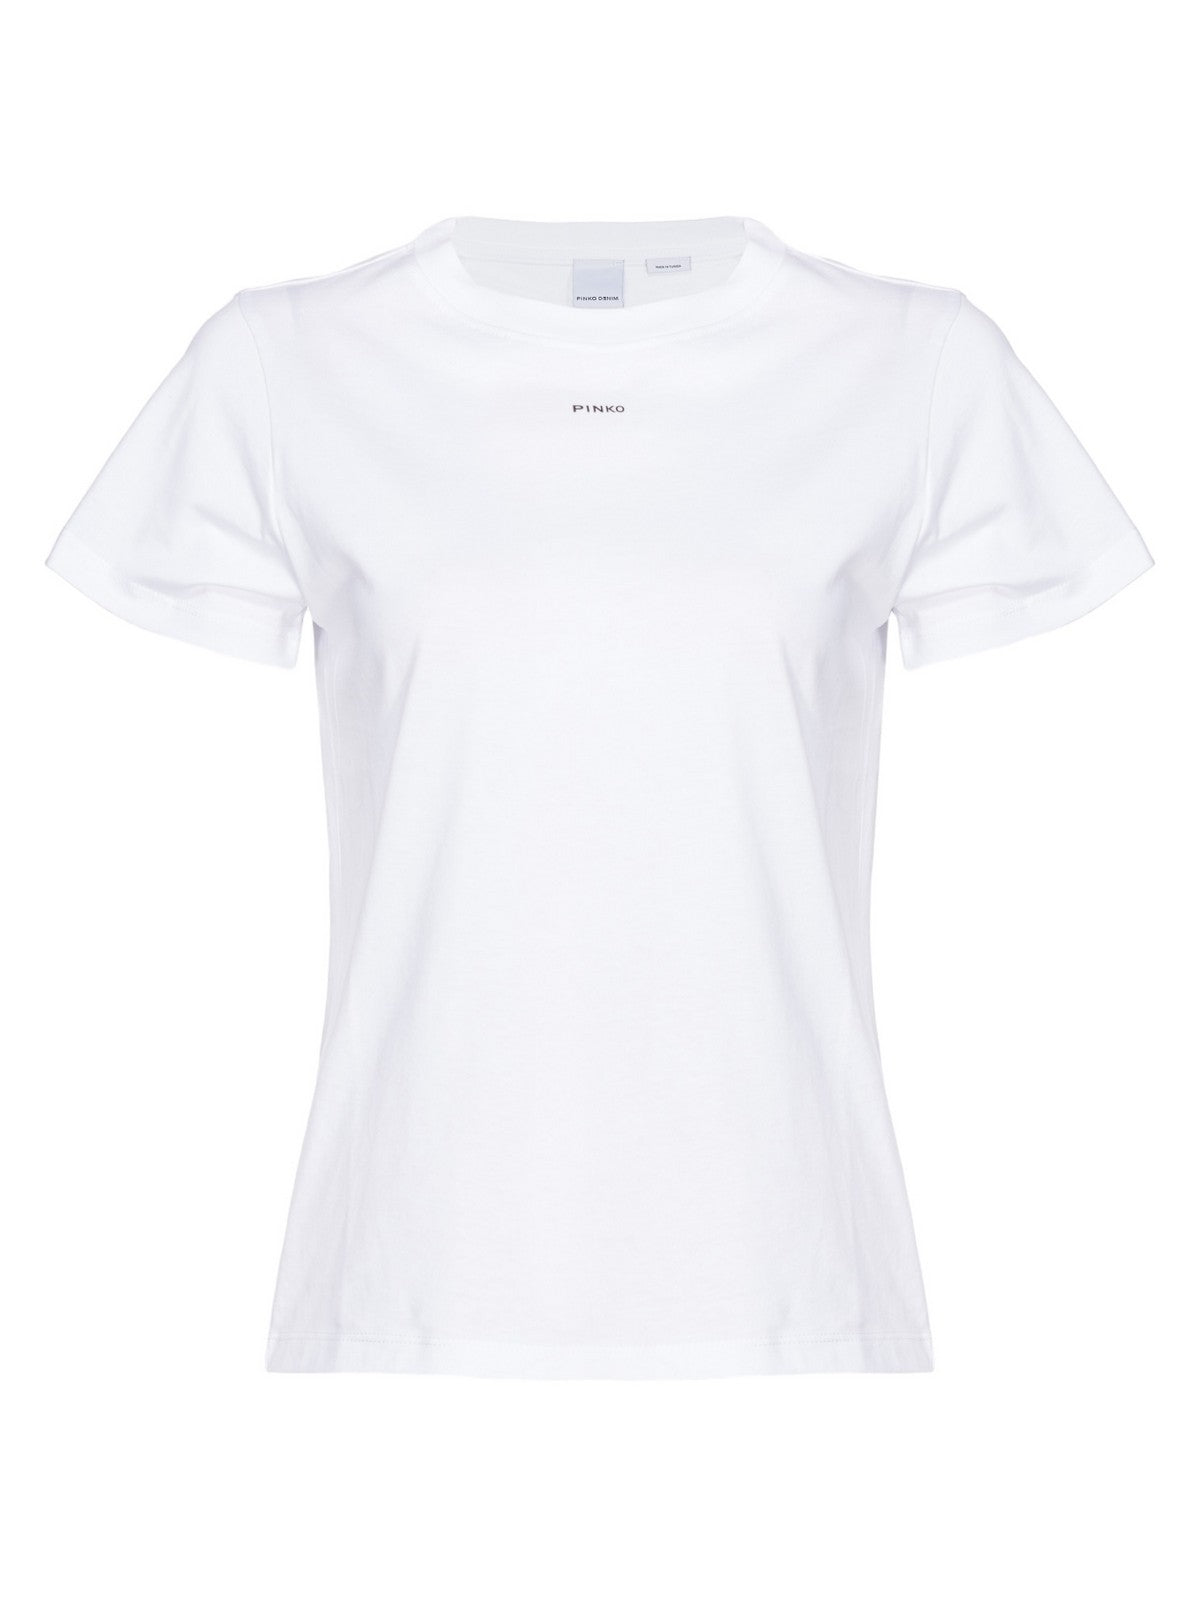 PINKO T-Shirt e Polo Donna  100373-A1N8 Z04 Bianco